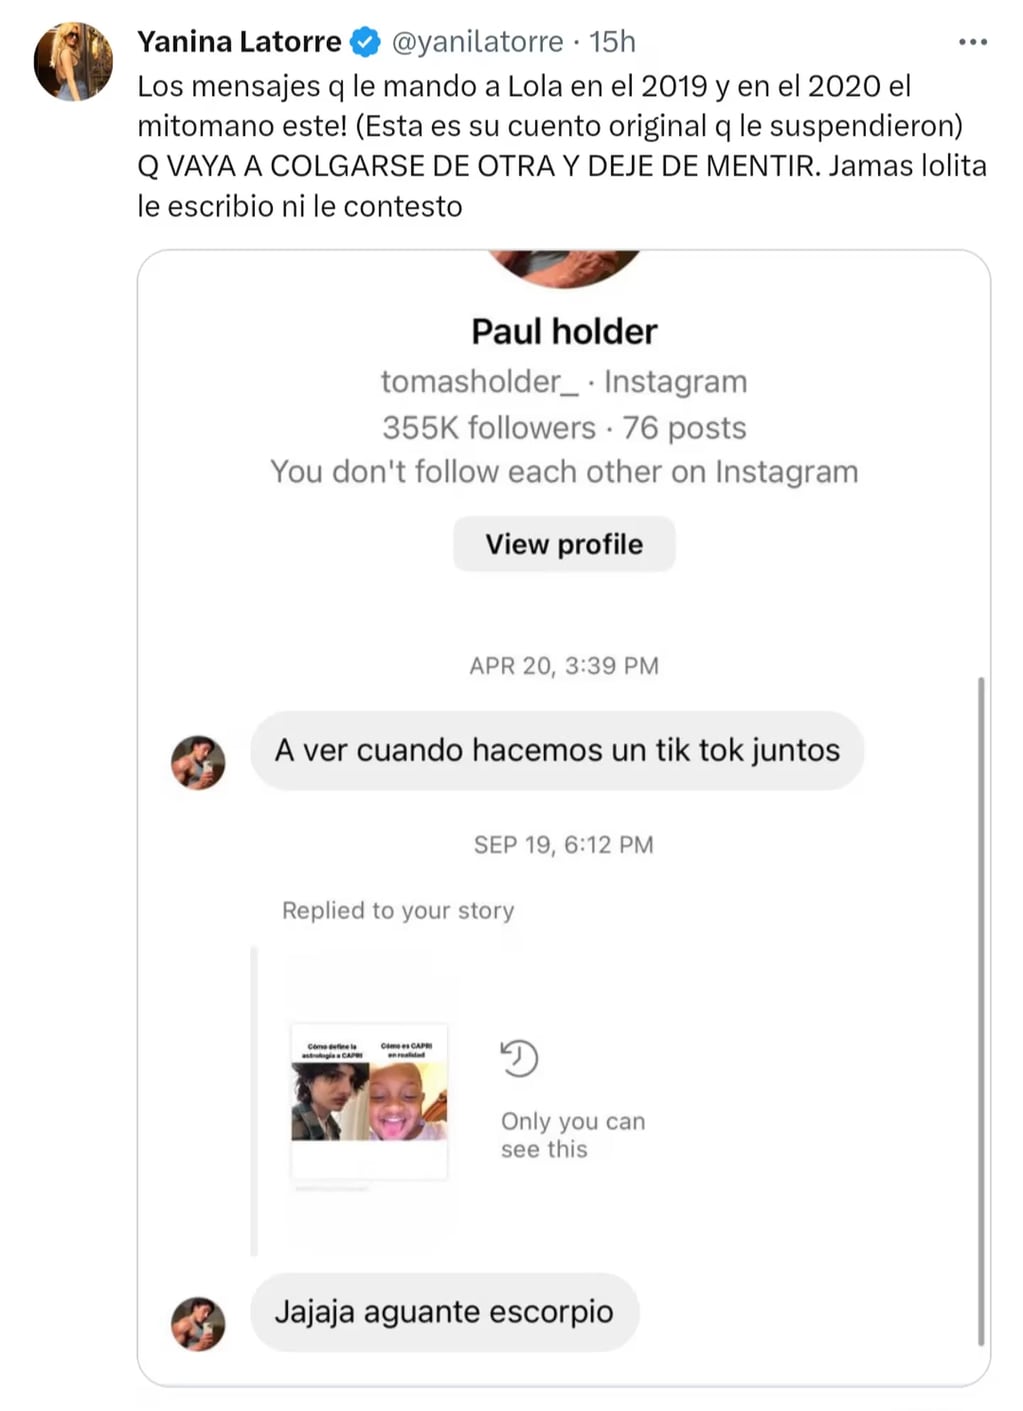 Yanina Latorre compartió los mensajes que Tomás Holder le enviaba a Lola entre 2019 y 2020. Gentileza: Foto Captura Twitter/yanilatorre.